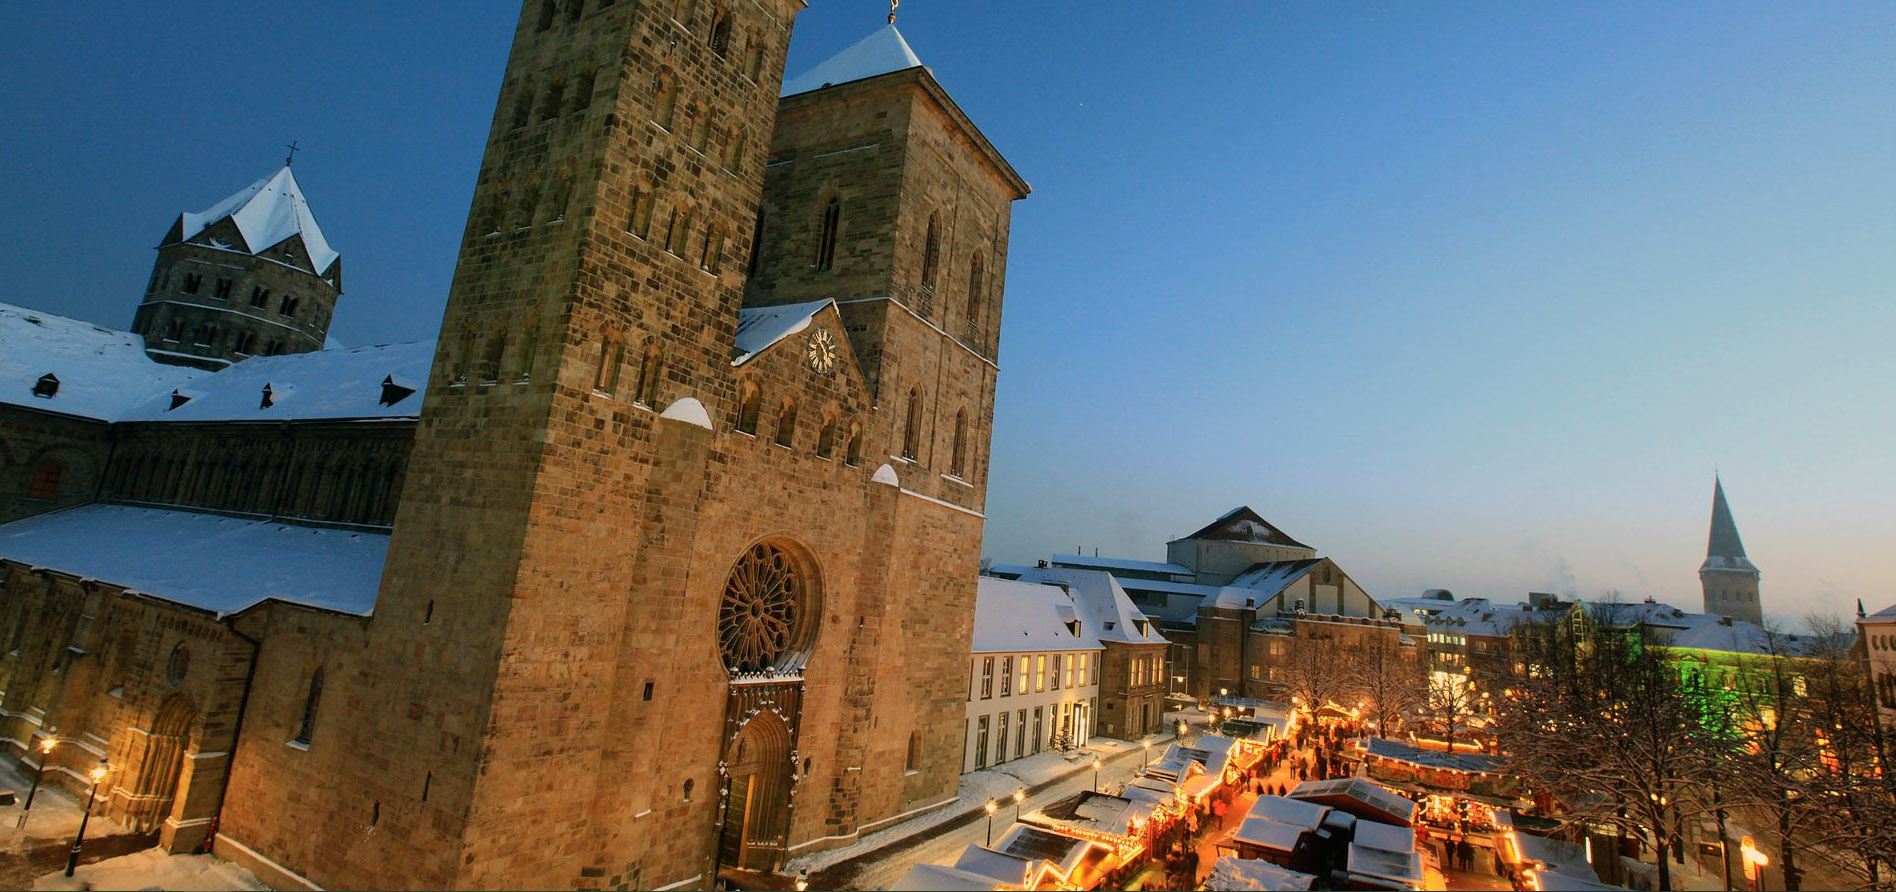 Der Osnabrücker Dom mit dem Weihnachtsmarkt im Vordergrund.